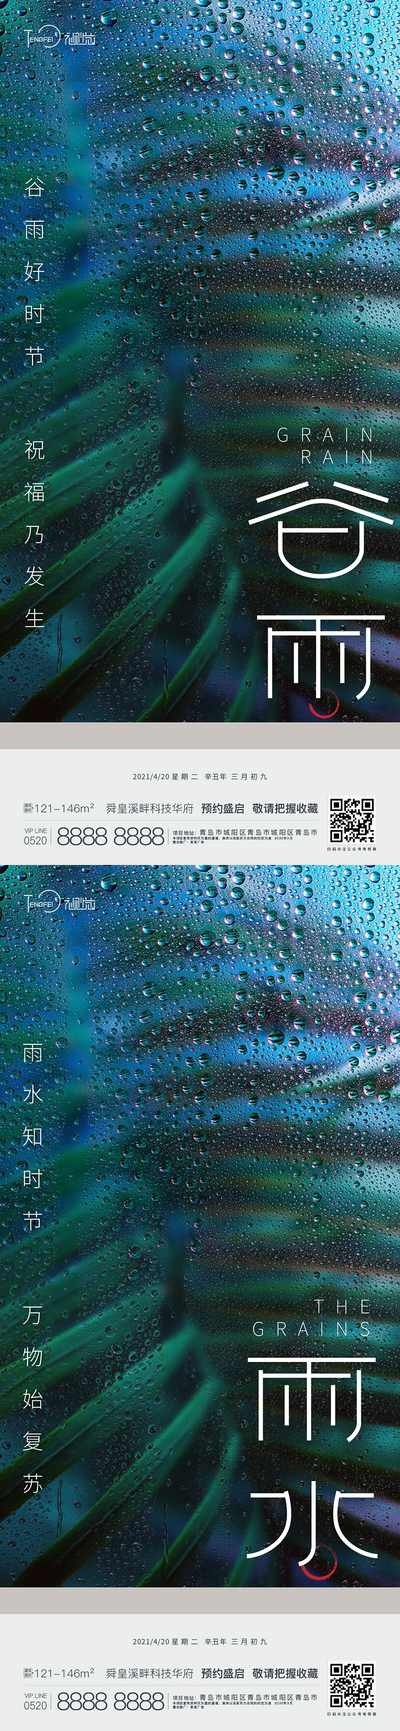 南门网 海报 二十四节气 谷雨 雨水  下雨  雨滴 水珠 叶子